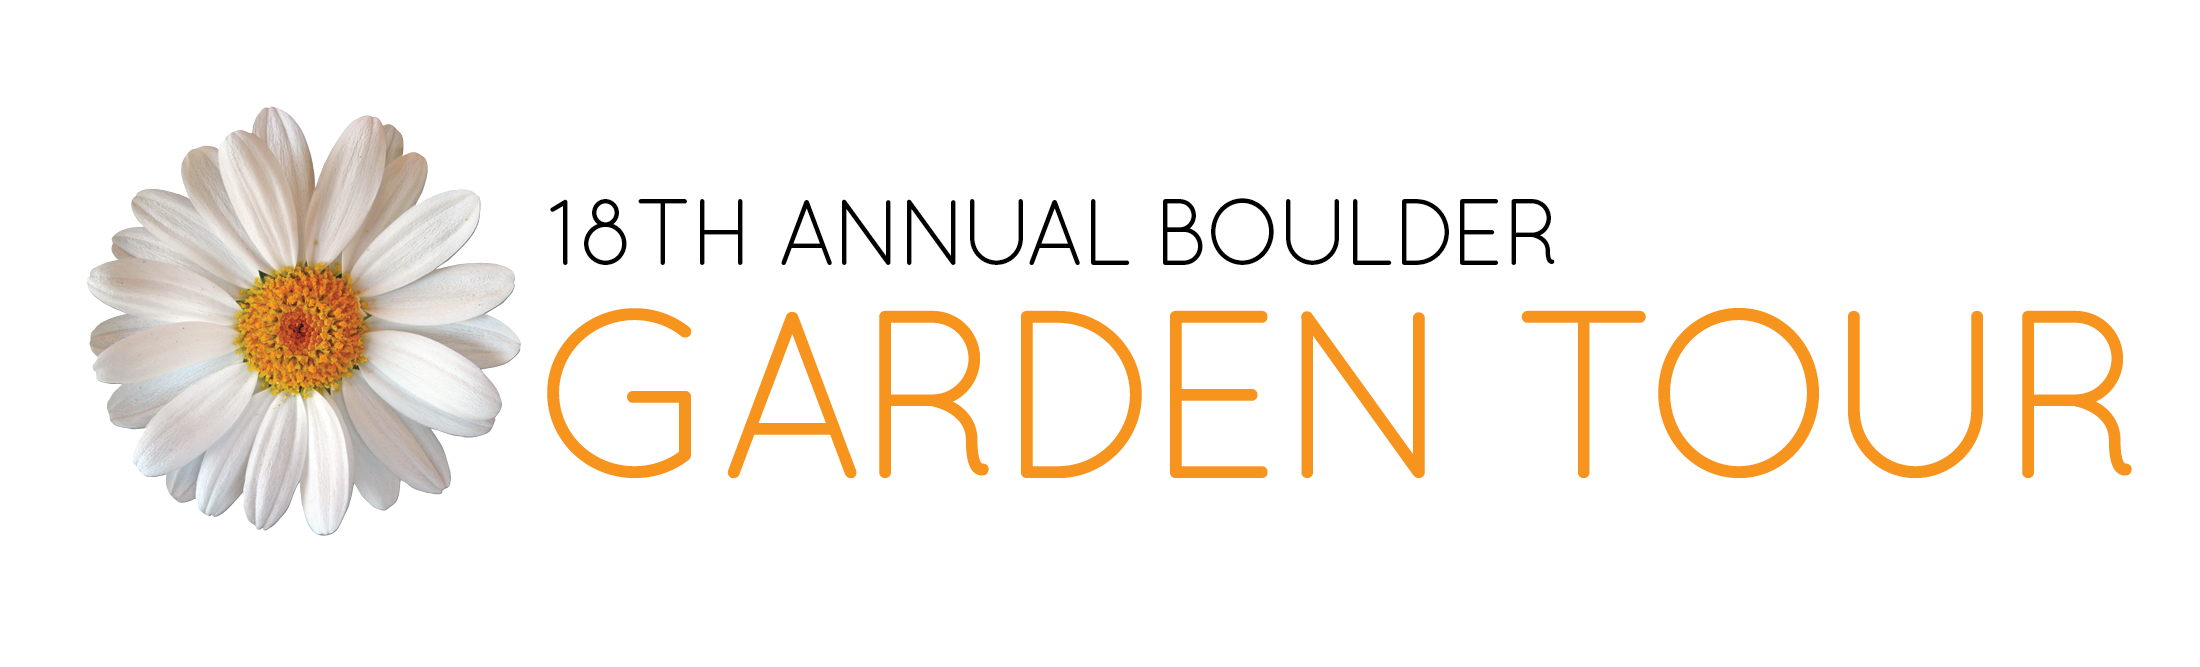 18th Annual Boulder Garden Tour